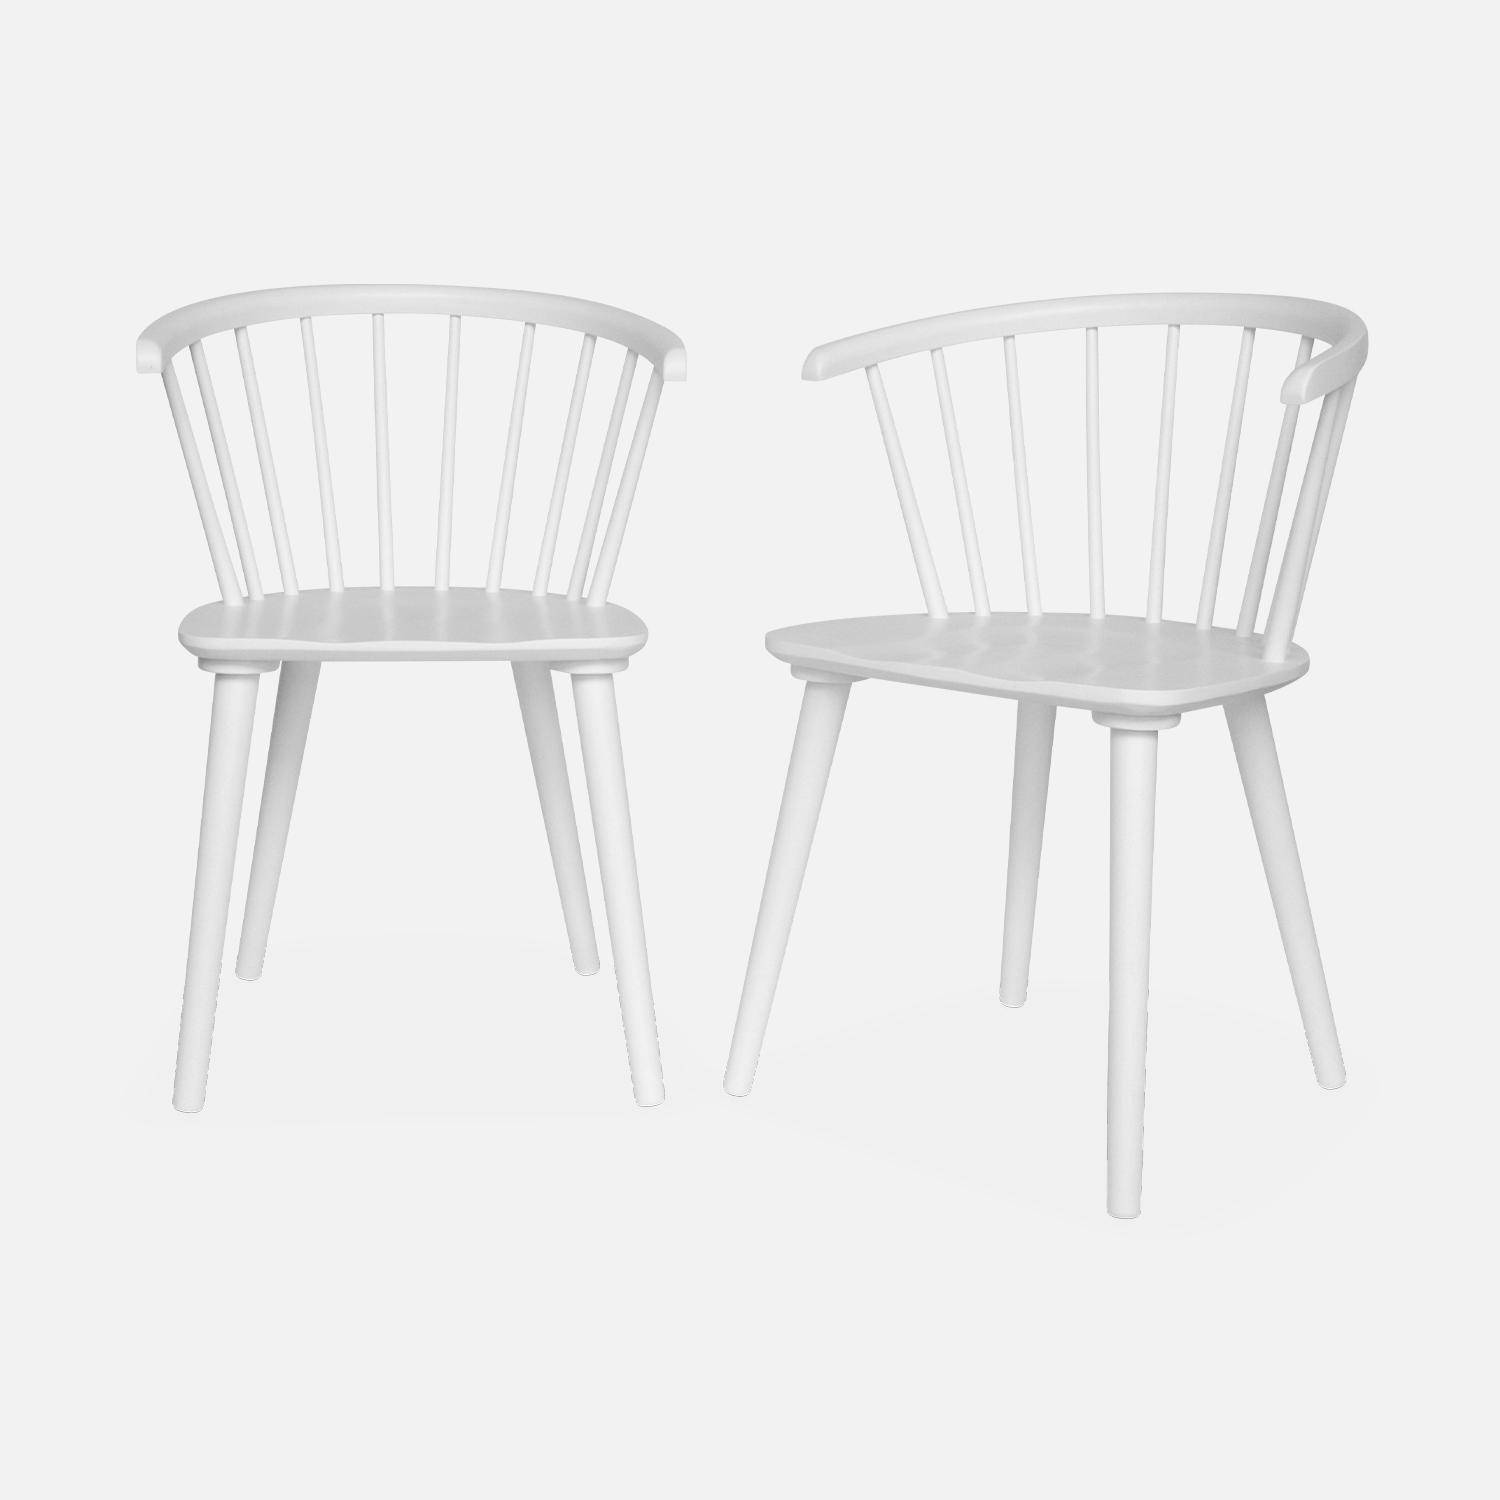 Juego de 2 sillas de bar de madera y contrachapado blanco, Paula, An 51 x Pr 53 x Al 75cm,sweeek,Photo3